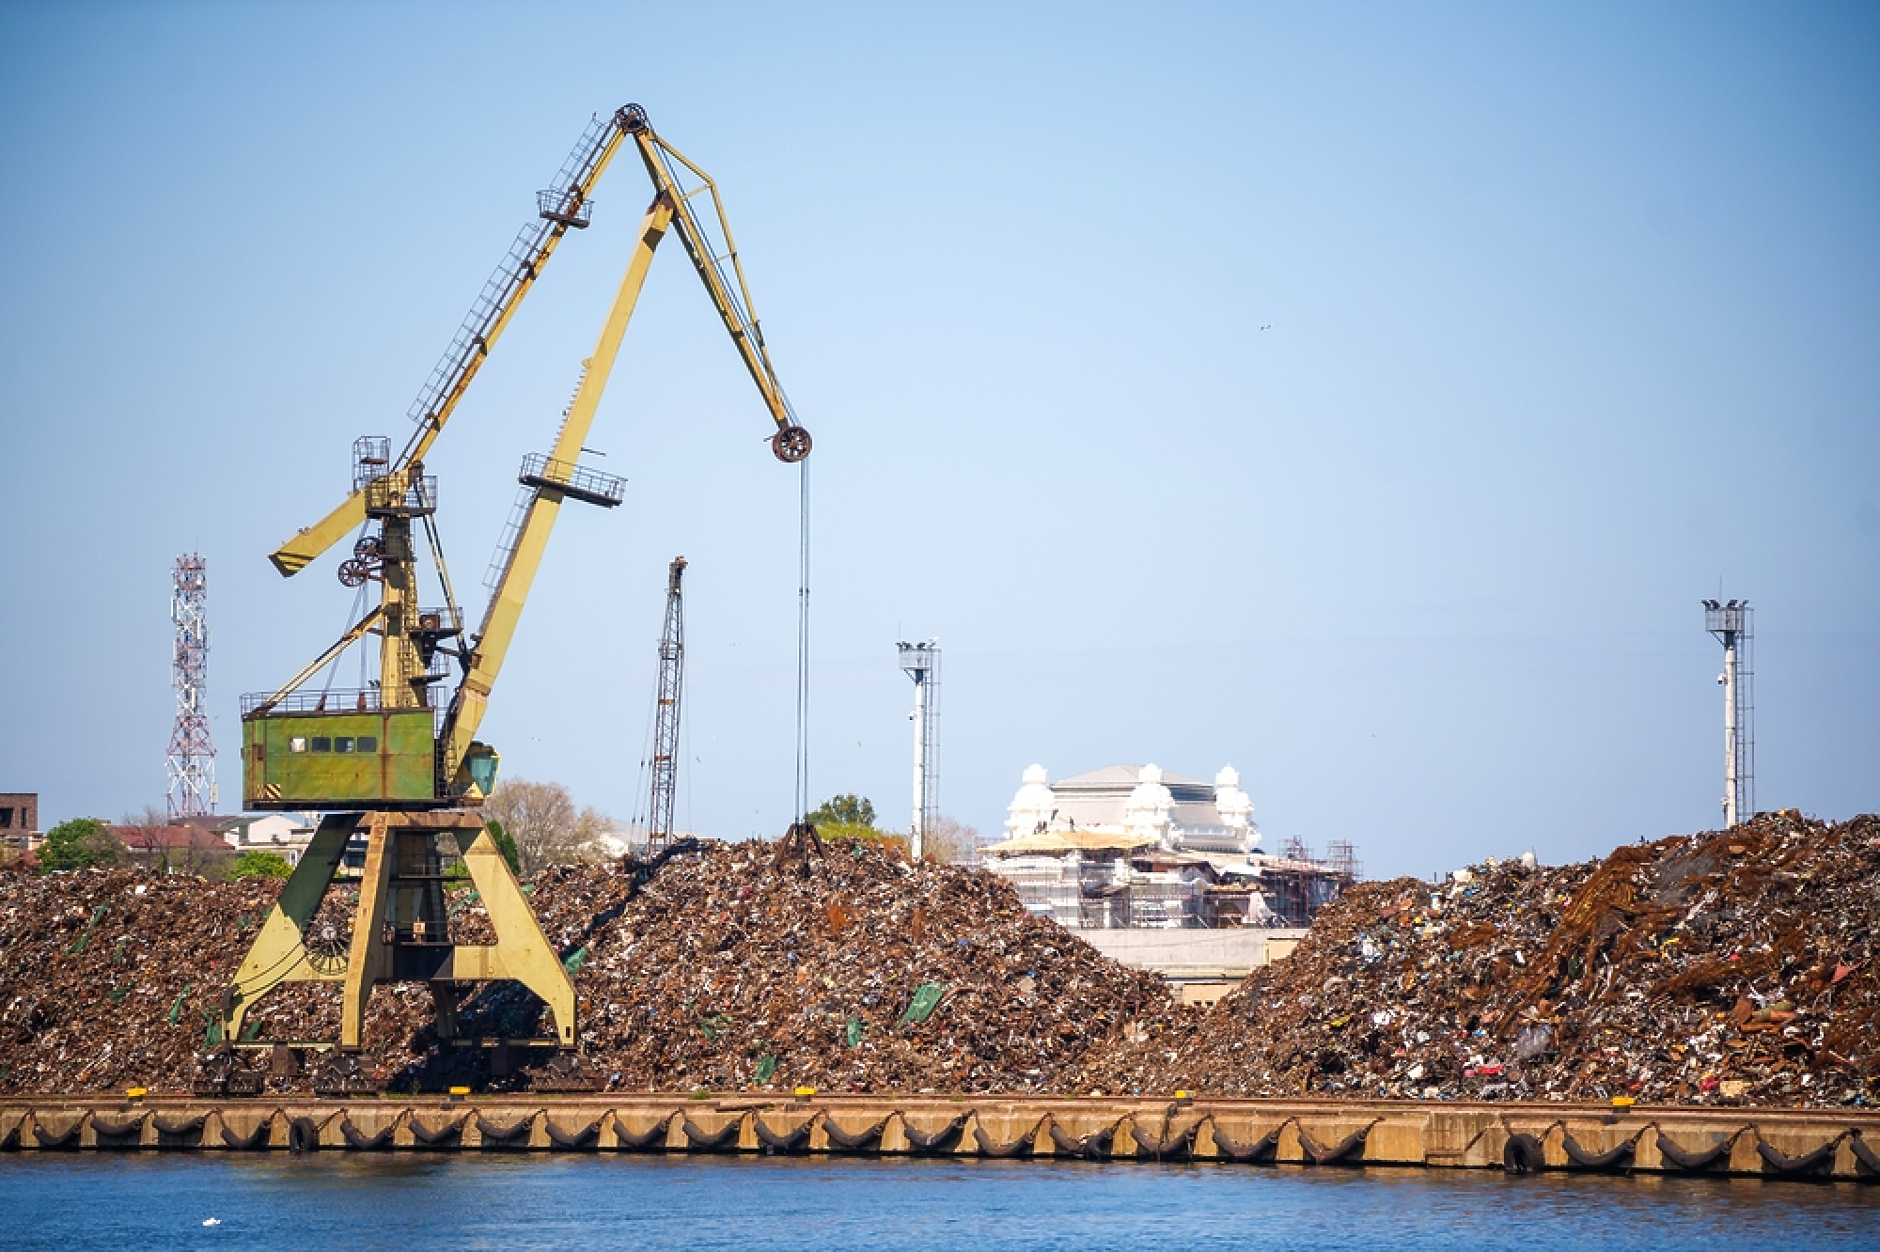  ЕС изнесъл 32,1 млн. тона отпадъци за година, главно в Турция и Индия